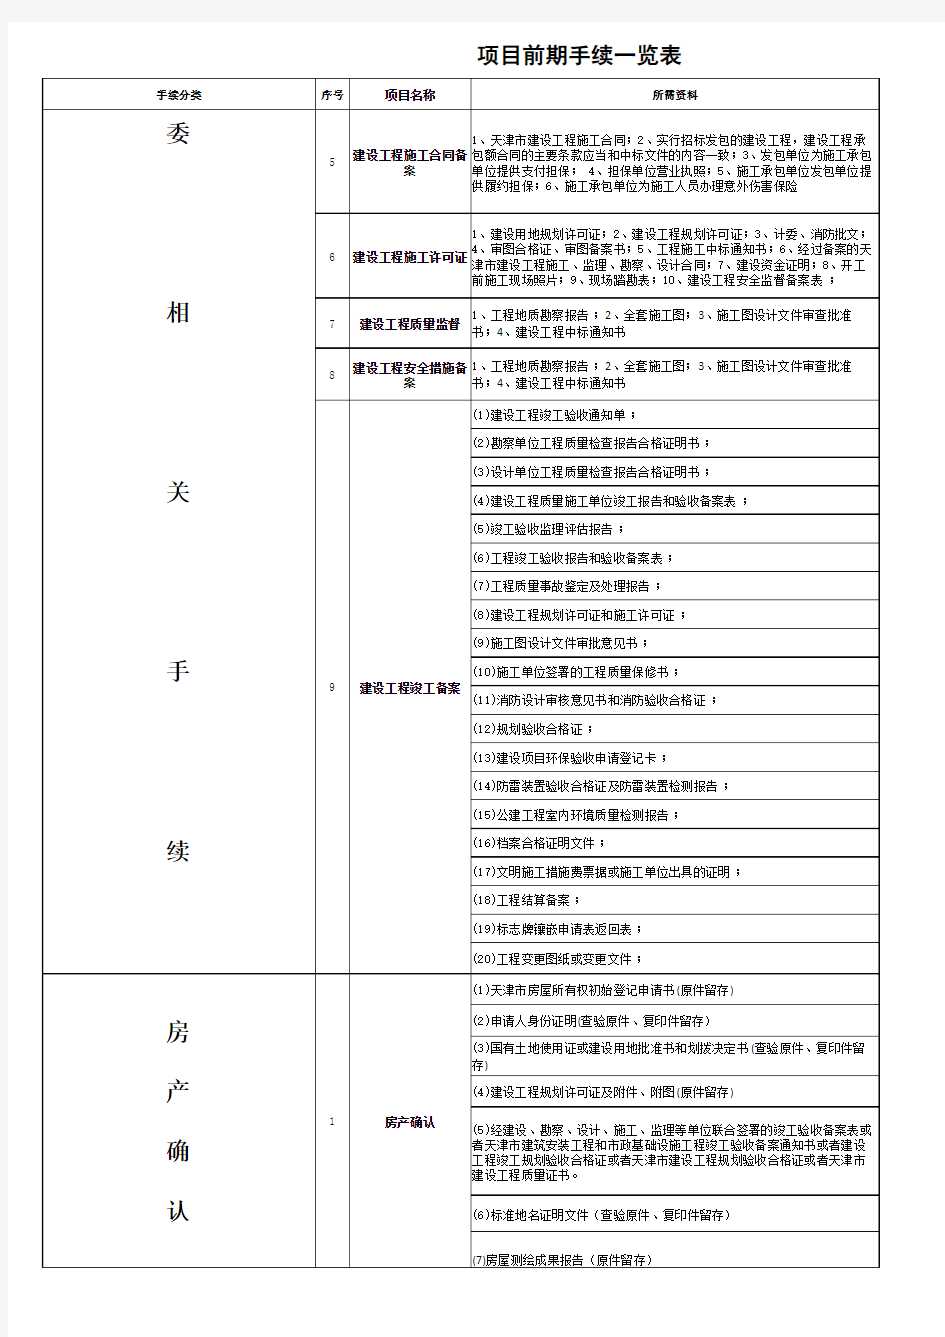 天津市项目前期手续一览表